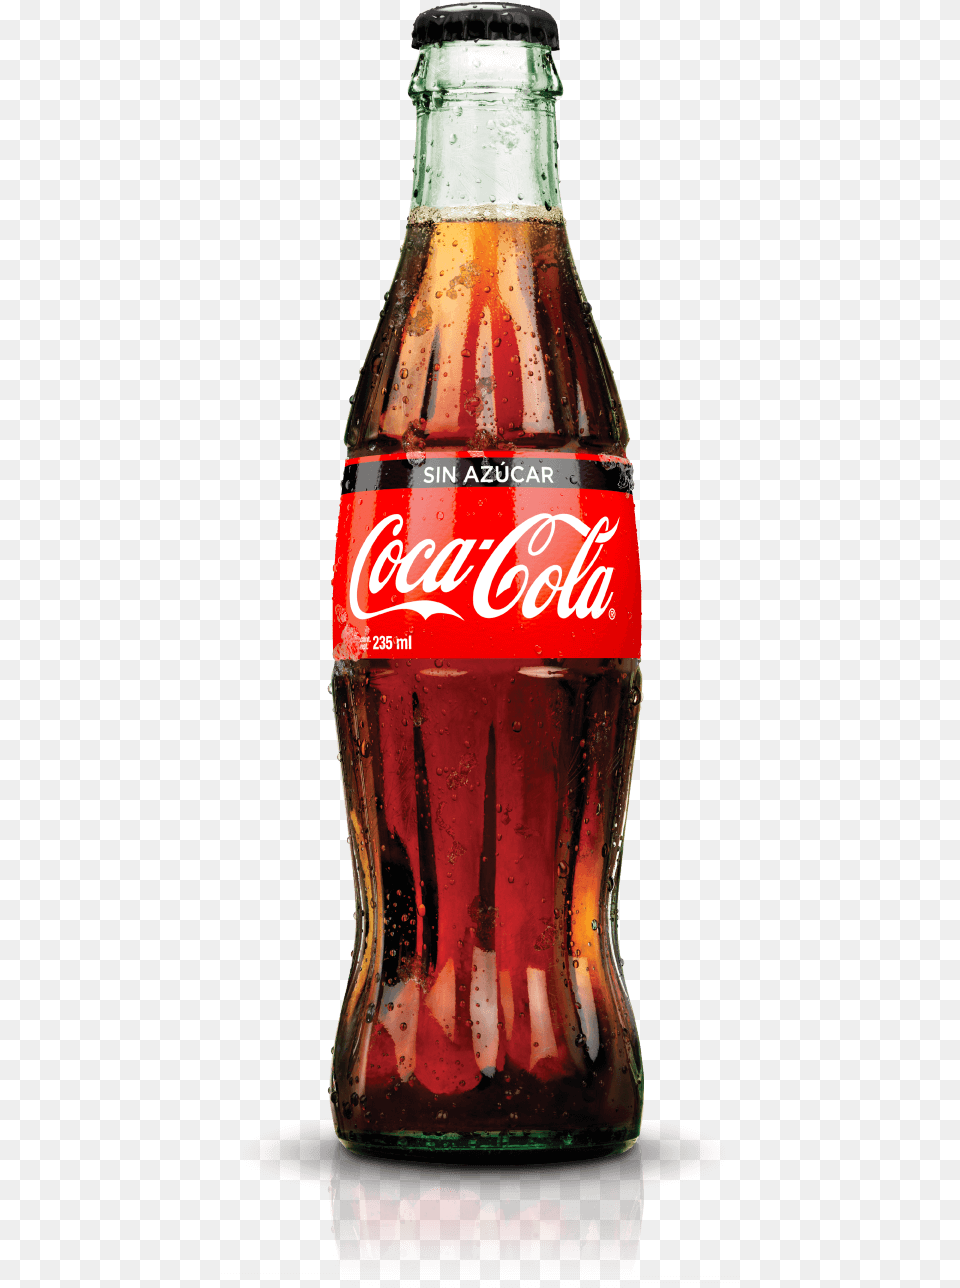 Diet Coke Bottle Coca Cola Bottle, Beverage, Soda, Alcohol, Beer Png Image